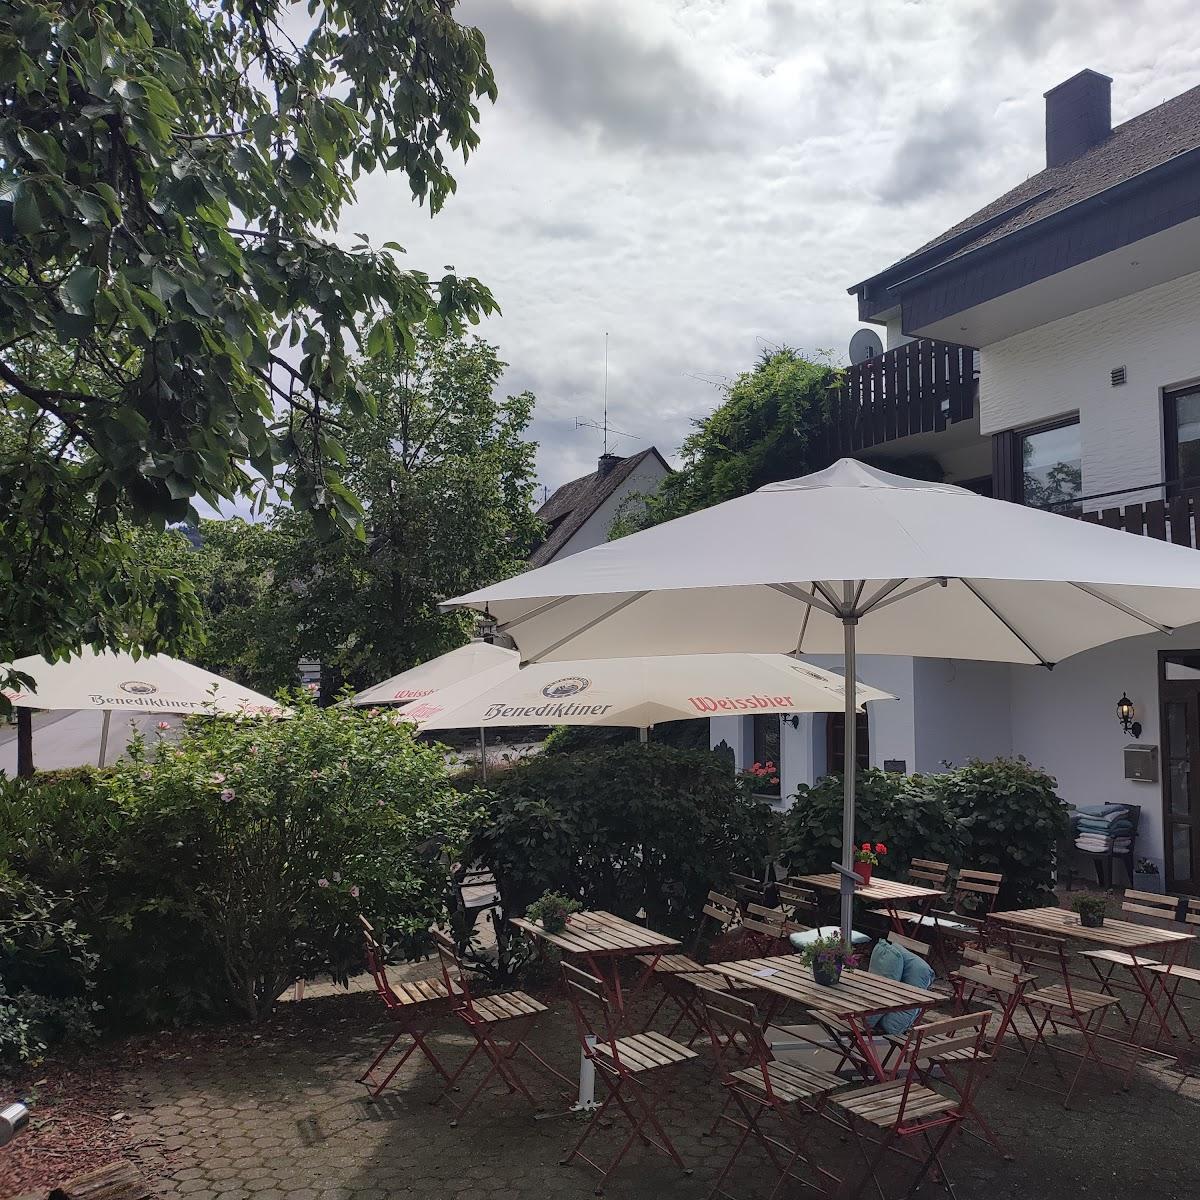 Restaurant "Moselhof" in Leiwen